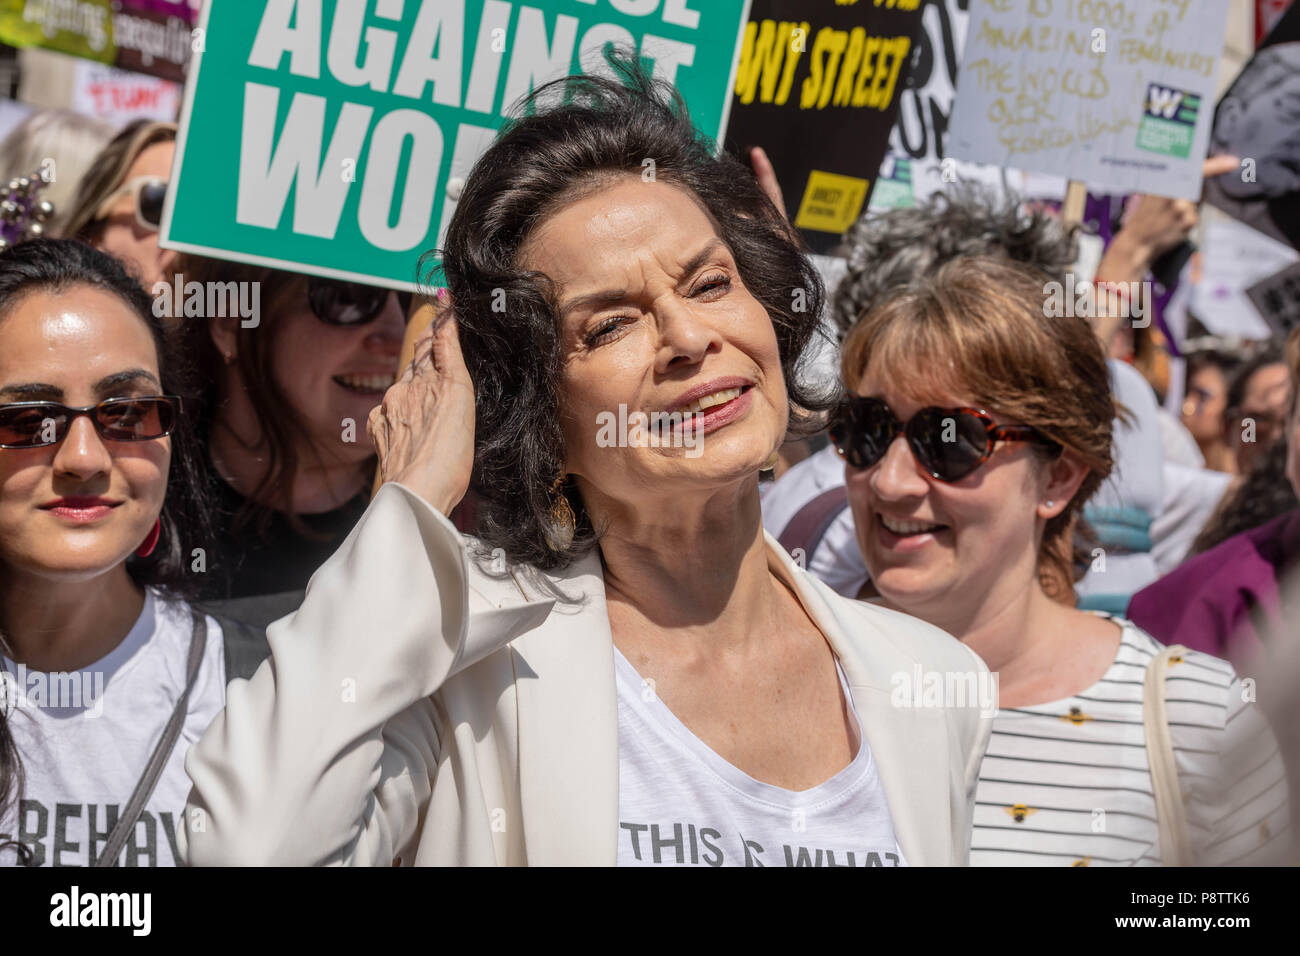 Londres, le 13 Juillet 2018 Mars femme -Mettre l'anti bruit démonstration trump illustré Bianca Jagger, Ian Davidson Crédit/Alamy Live News Banque D'Images